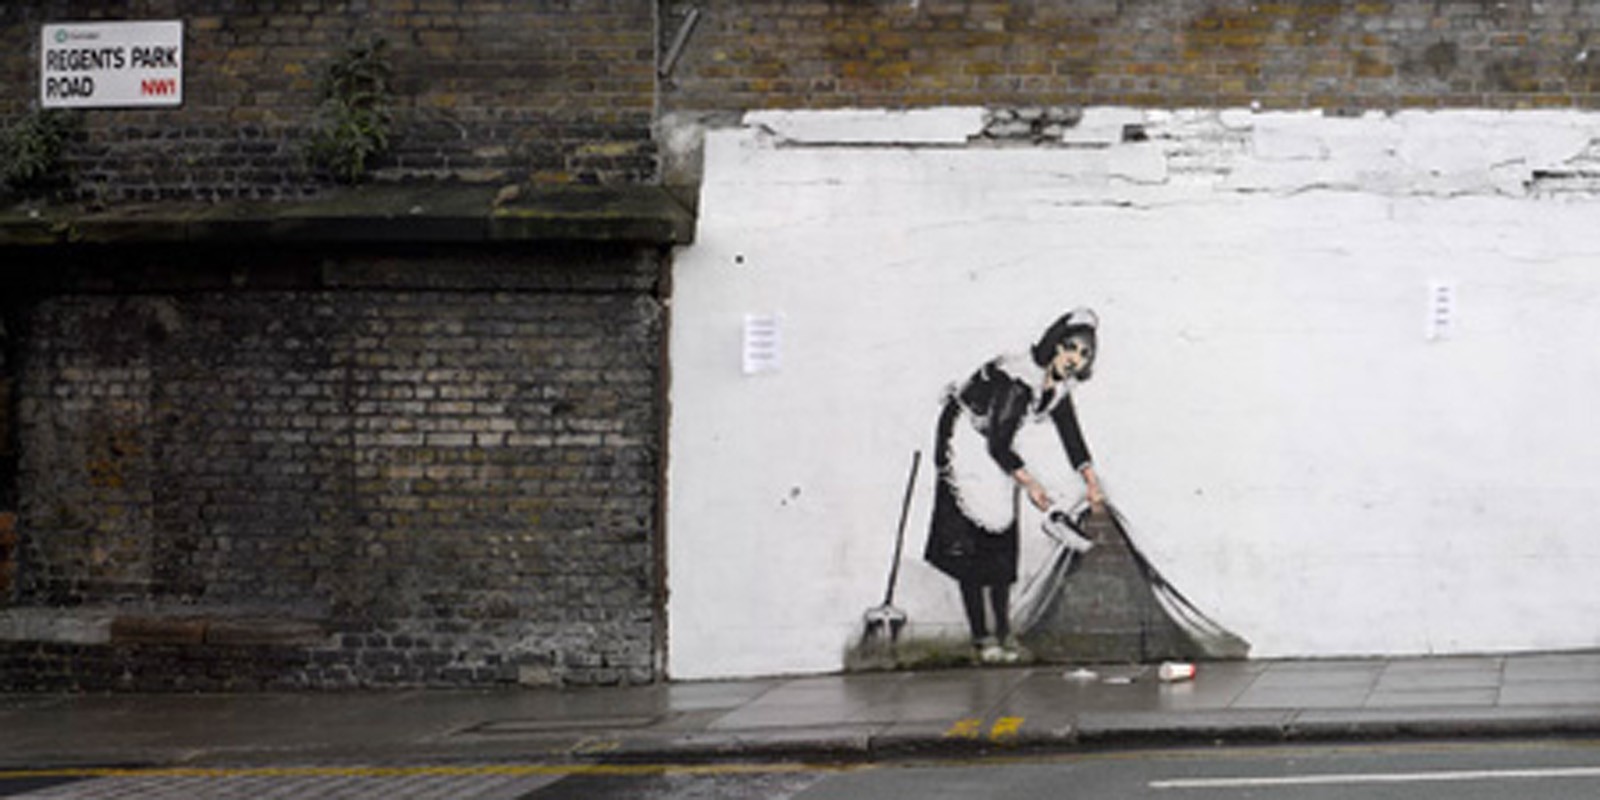 Banksy - Regents Park Rd, Camden, London